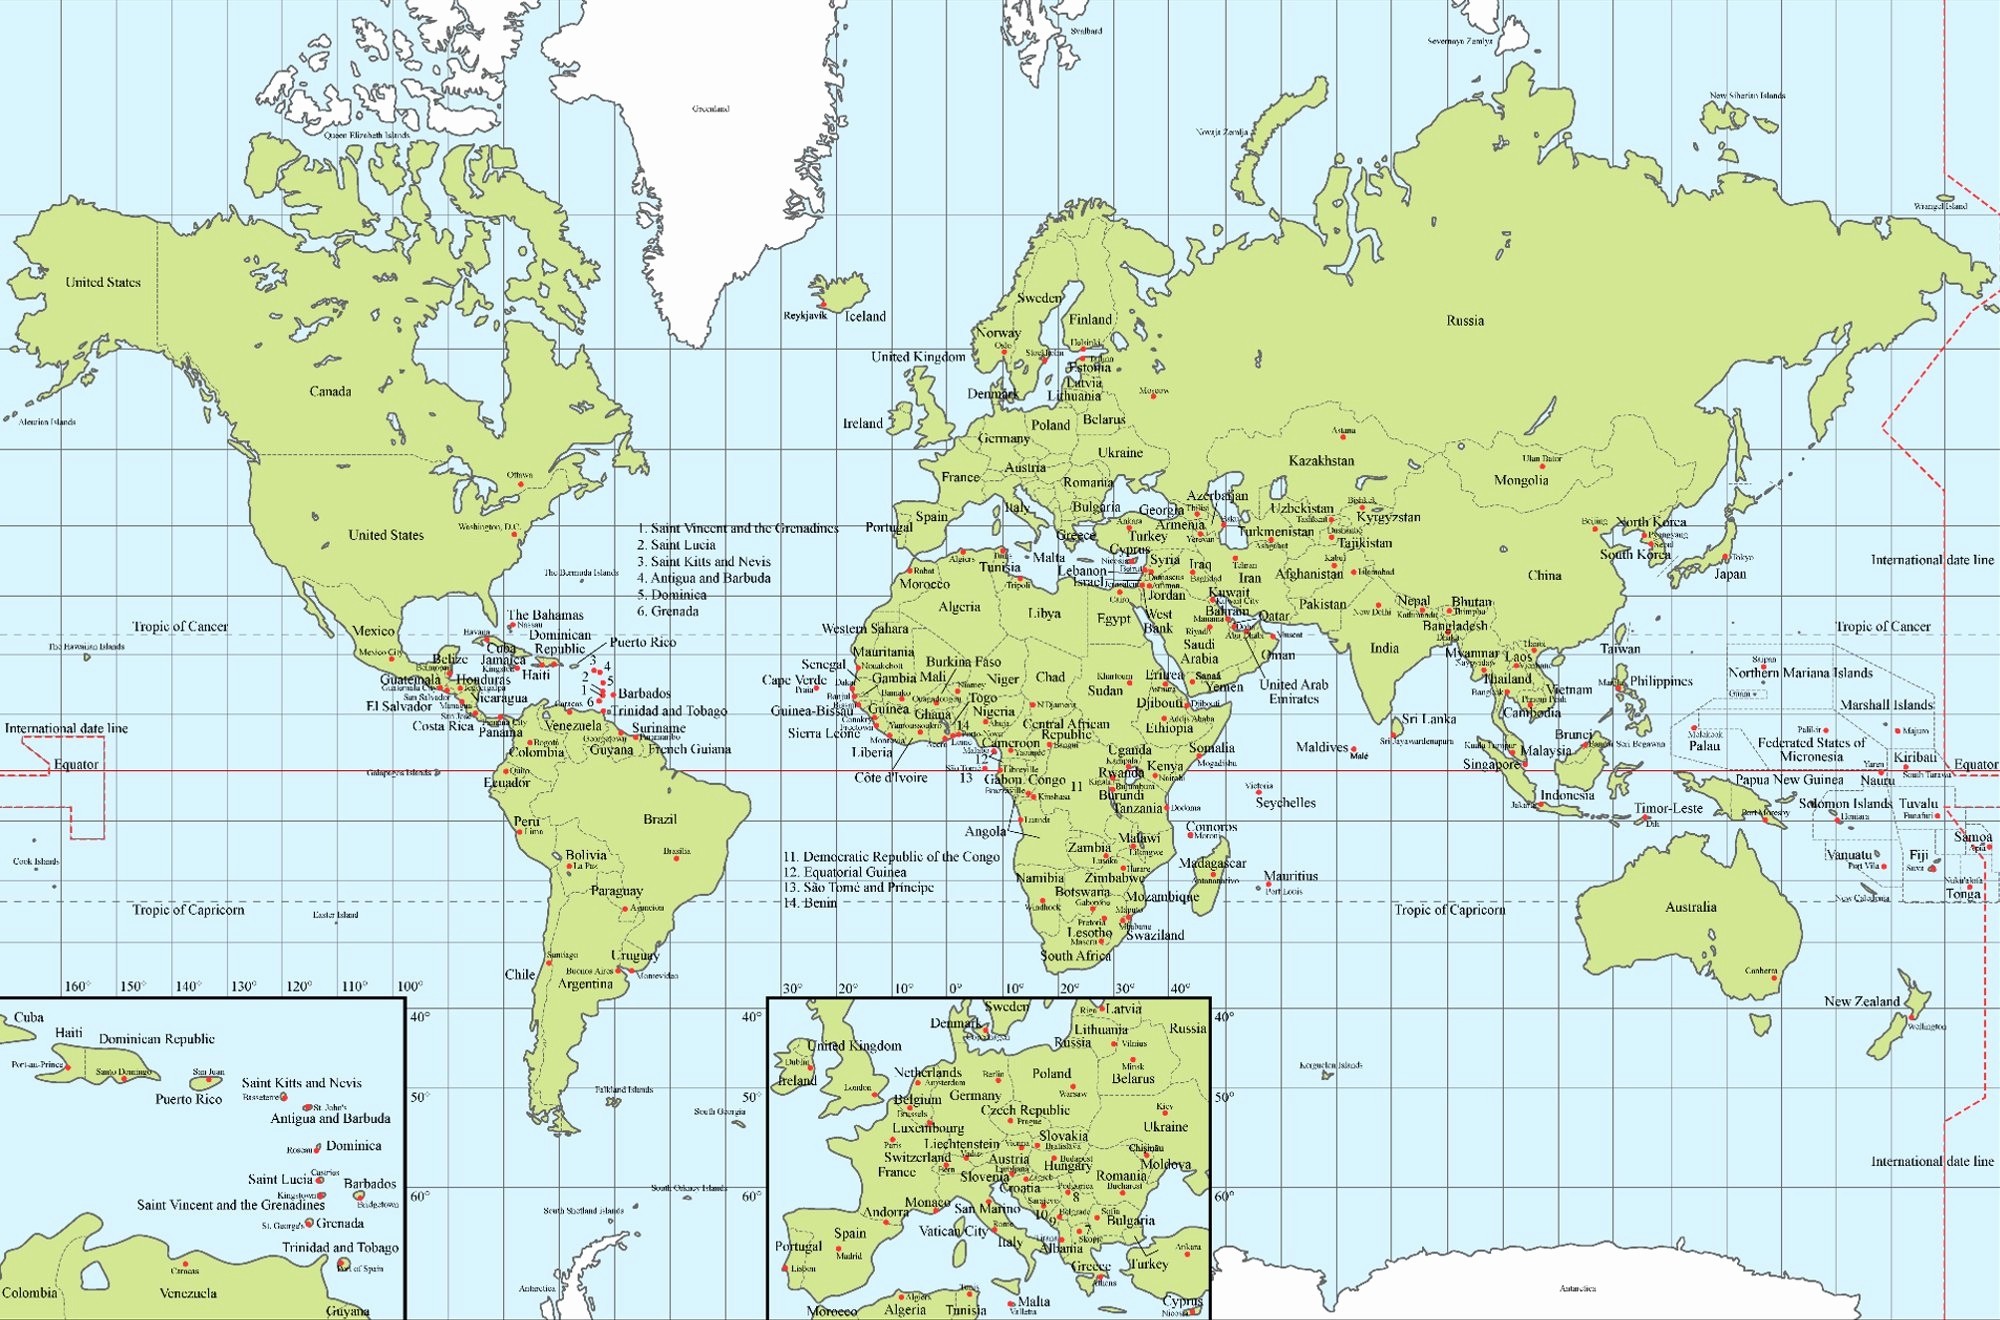 World Map With Latitude And Longitude Erprize